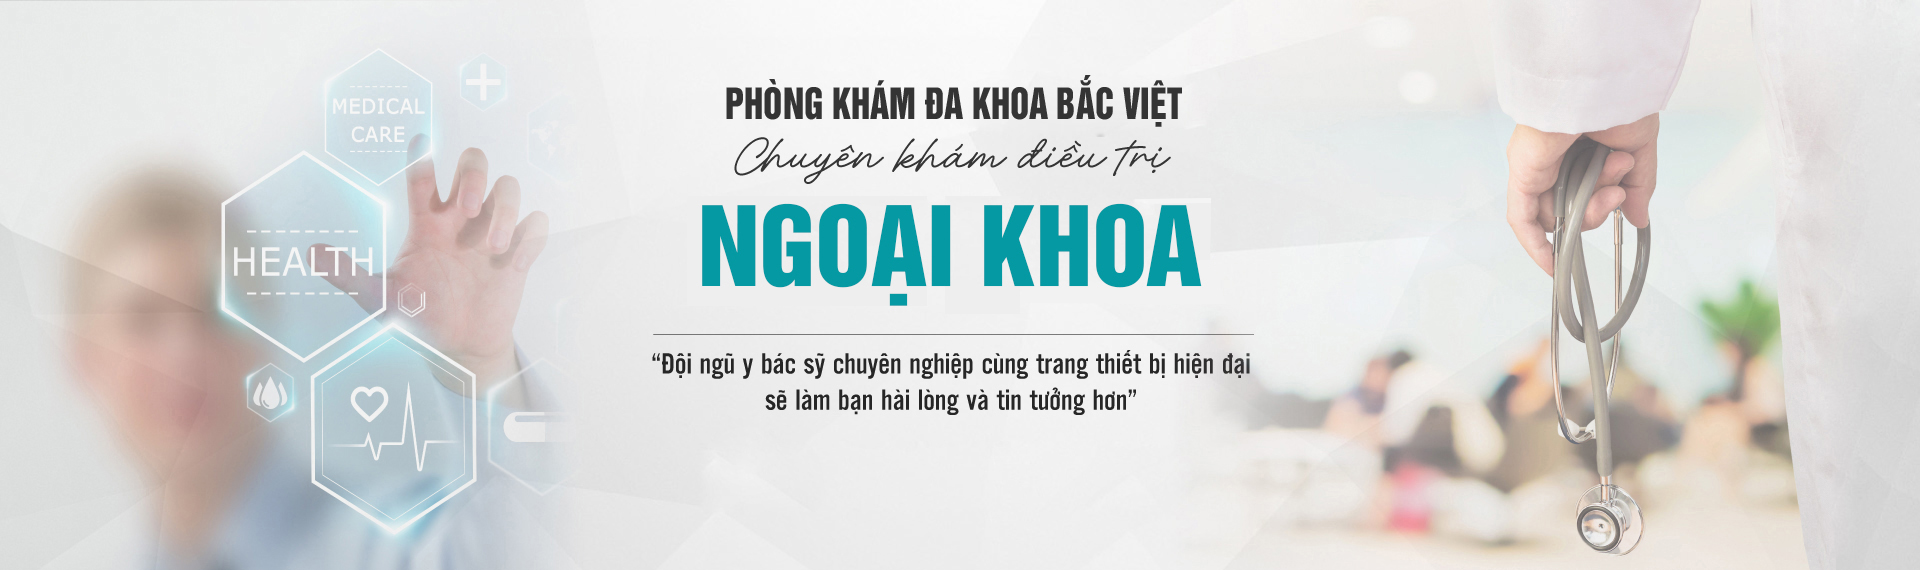 chat-luong-phong-kham-bac-viet-co-tot-khong1